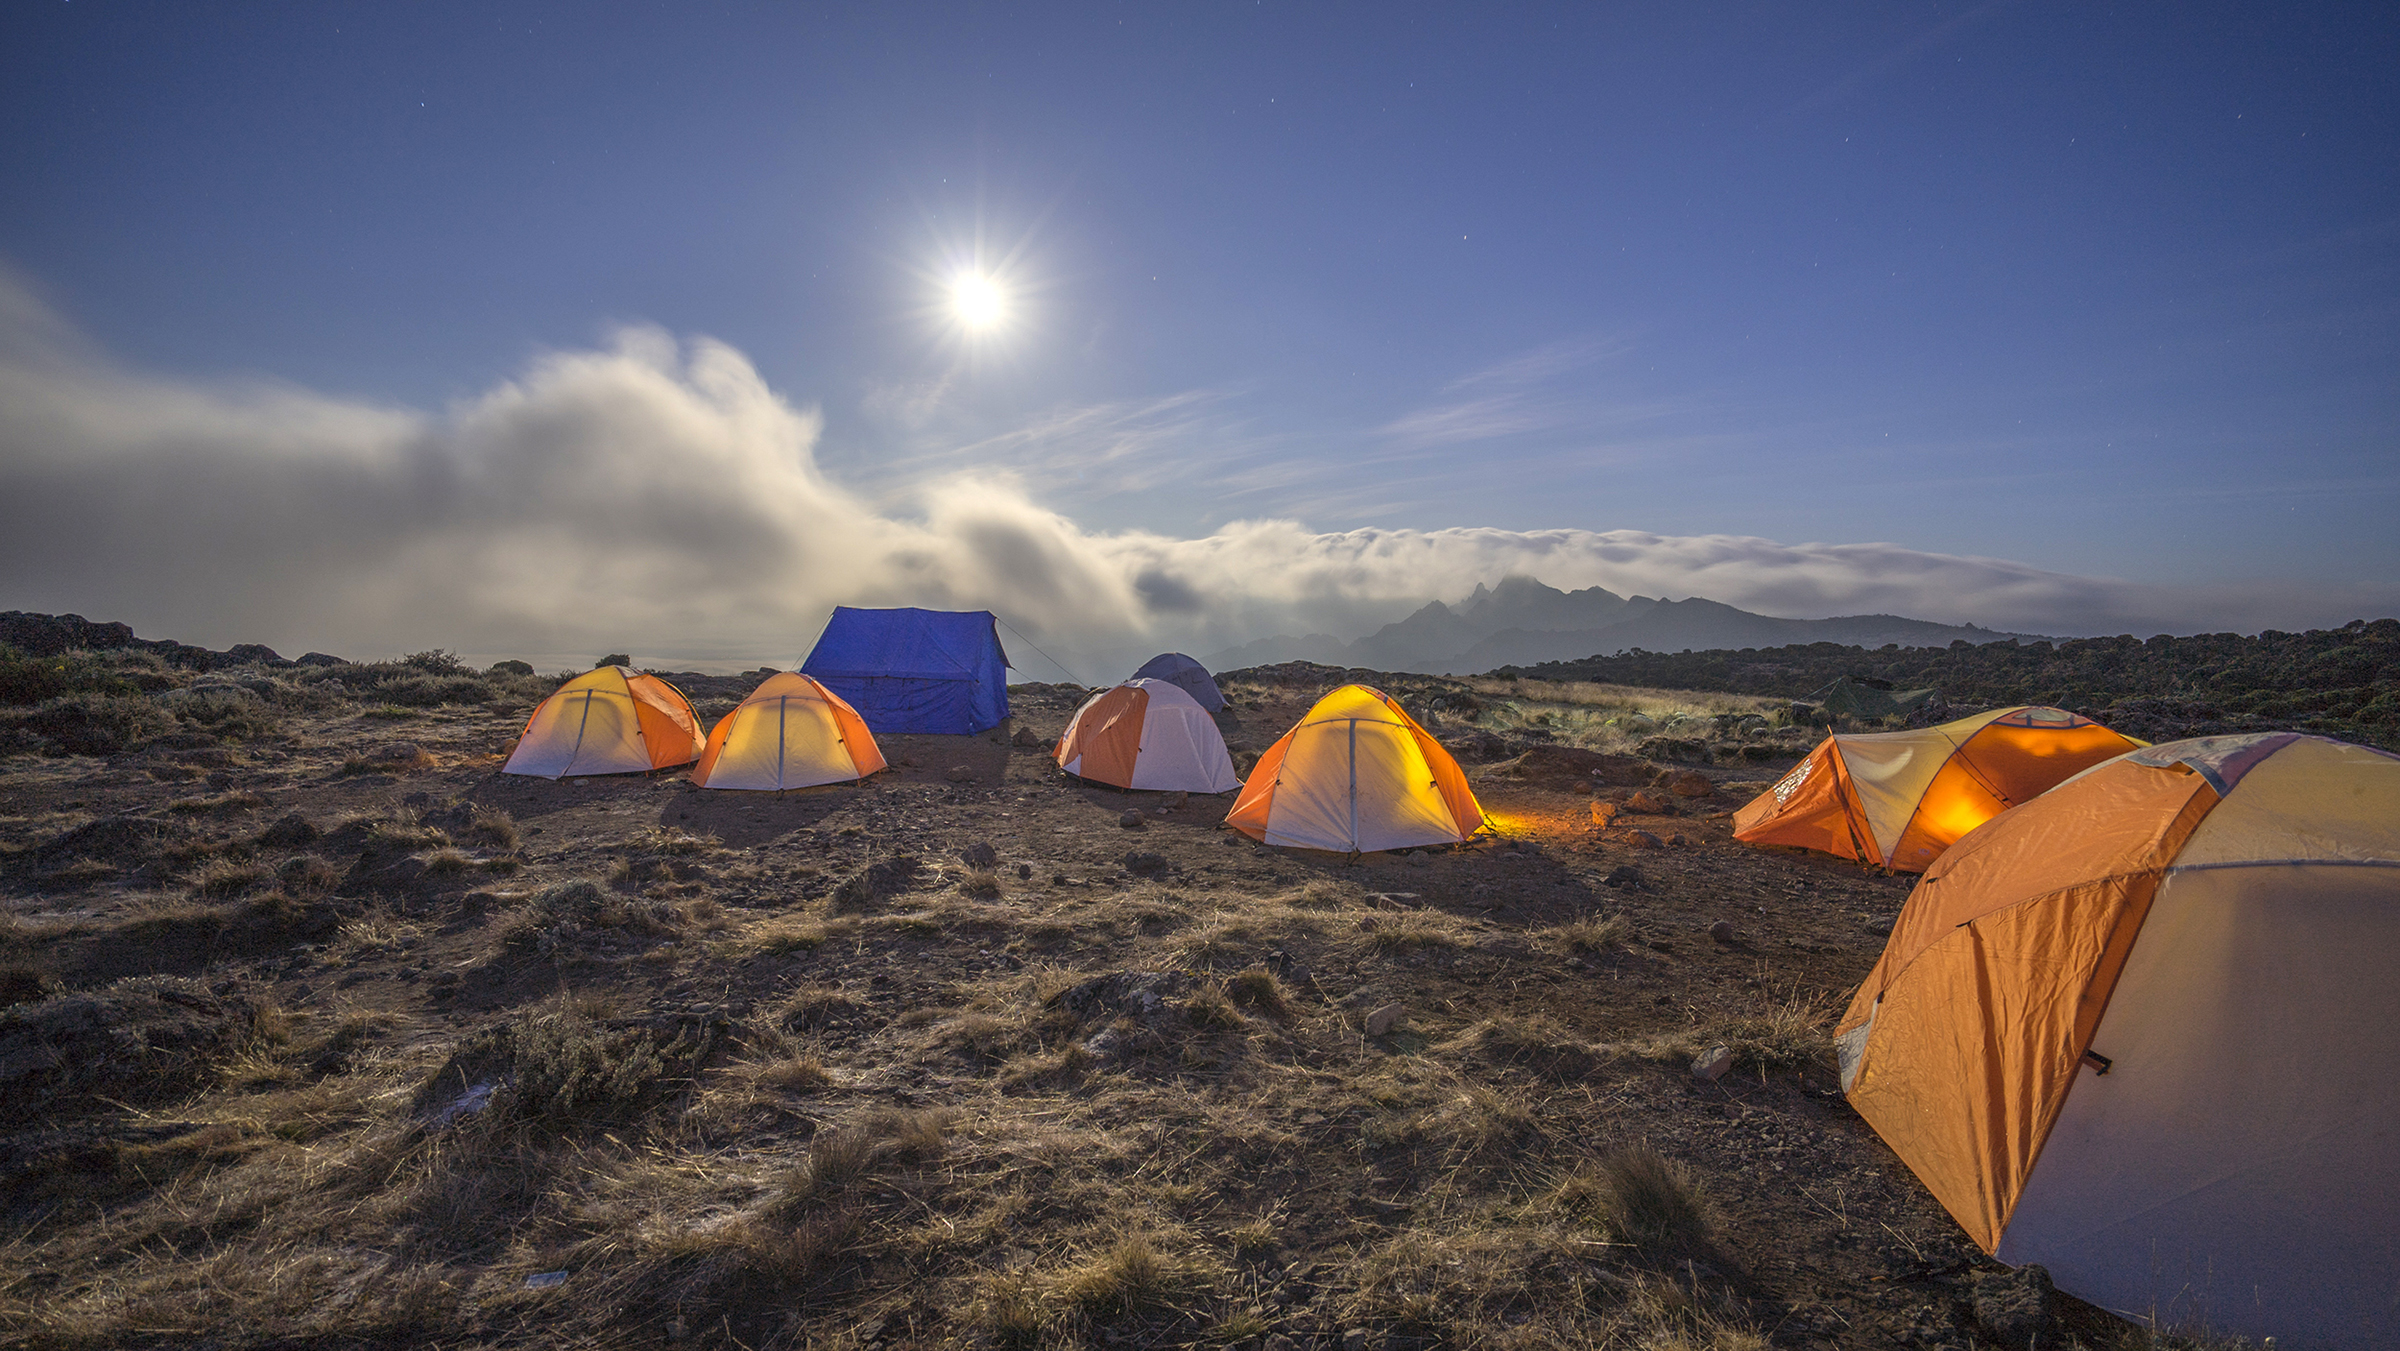 Kilimanjaro: Hết ngày dài lại đêm thâu, chúng ta đi leo núi Phi châu - Ảnh 6.